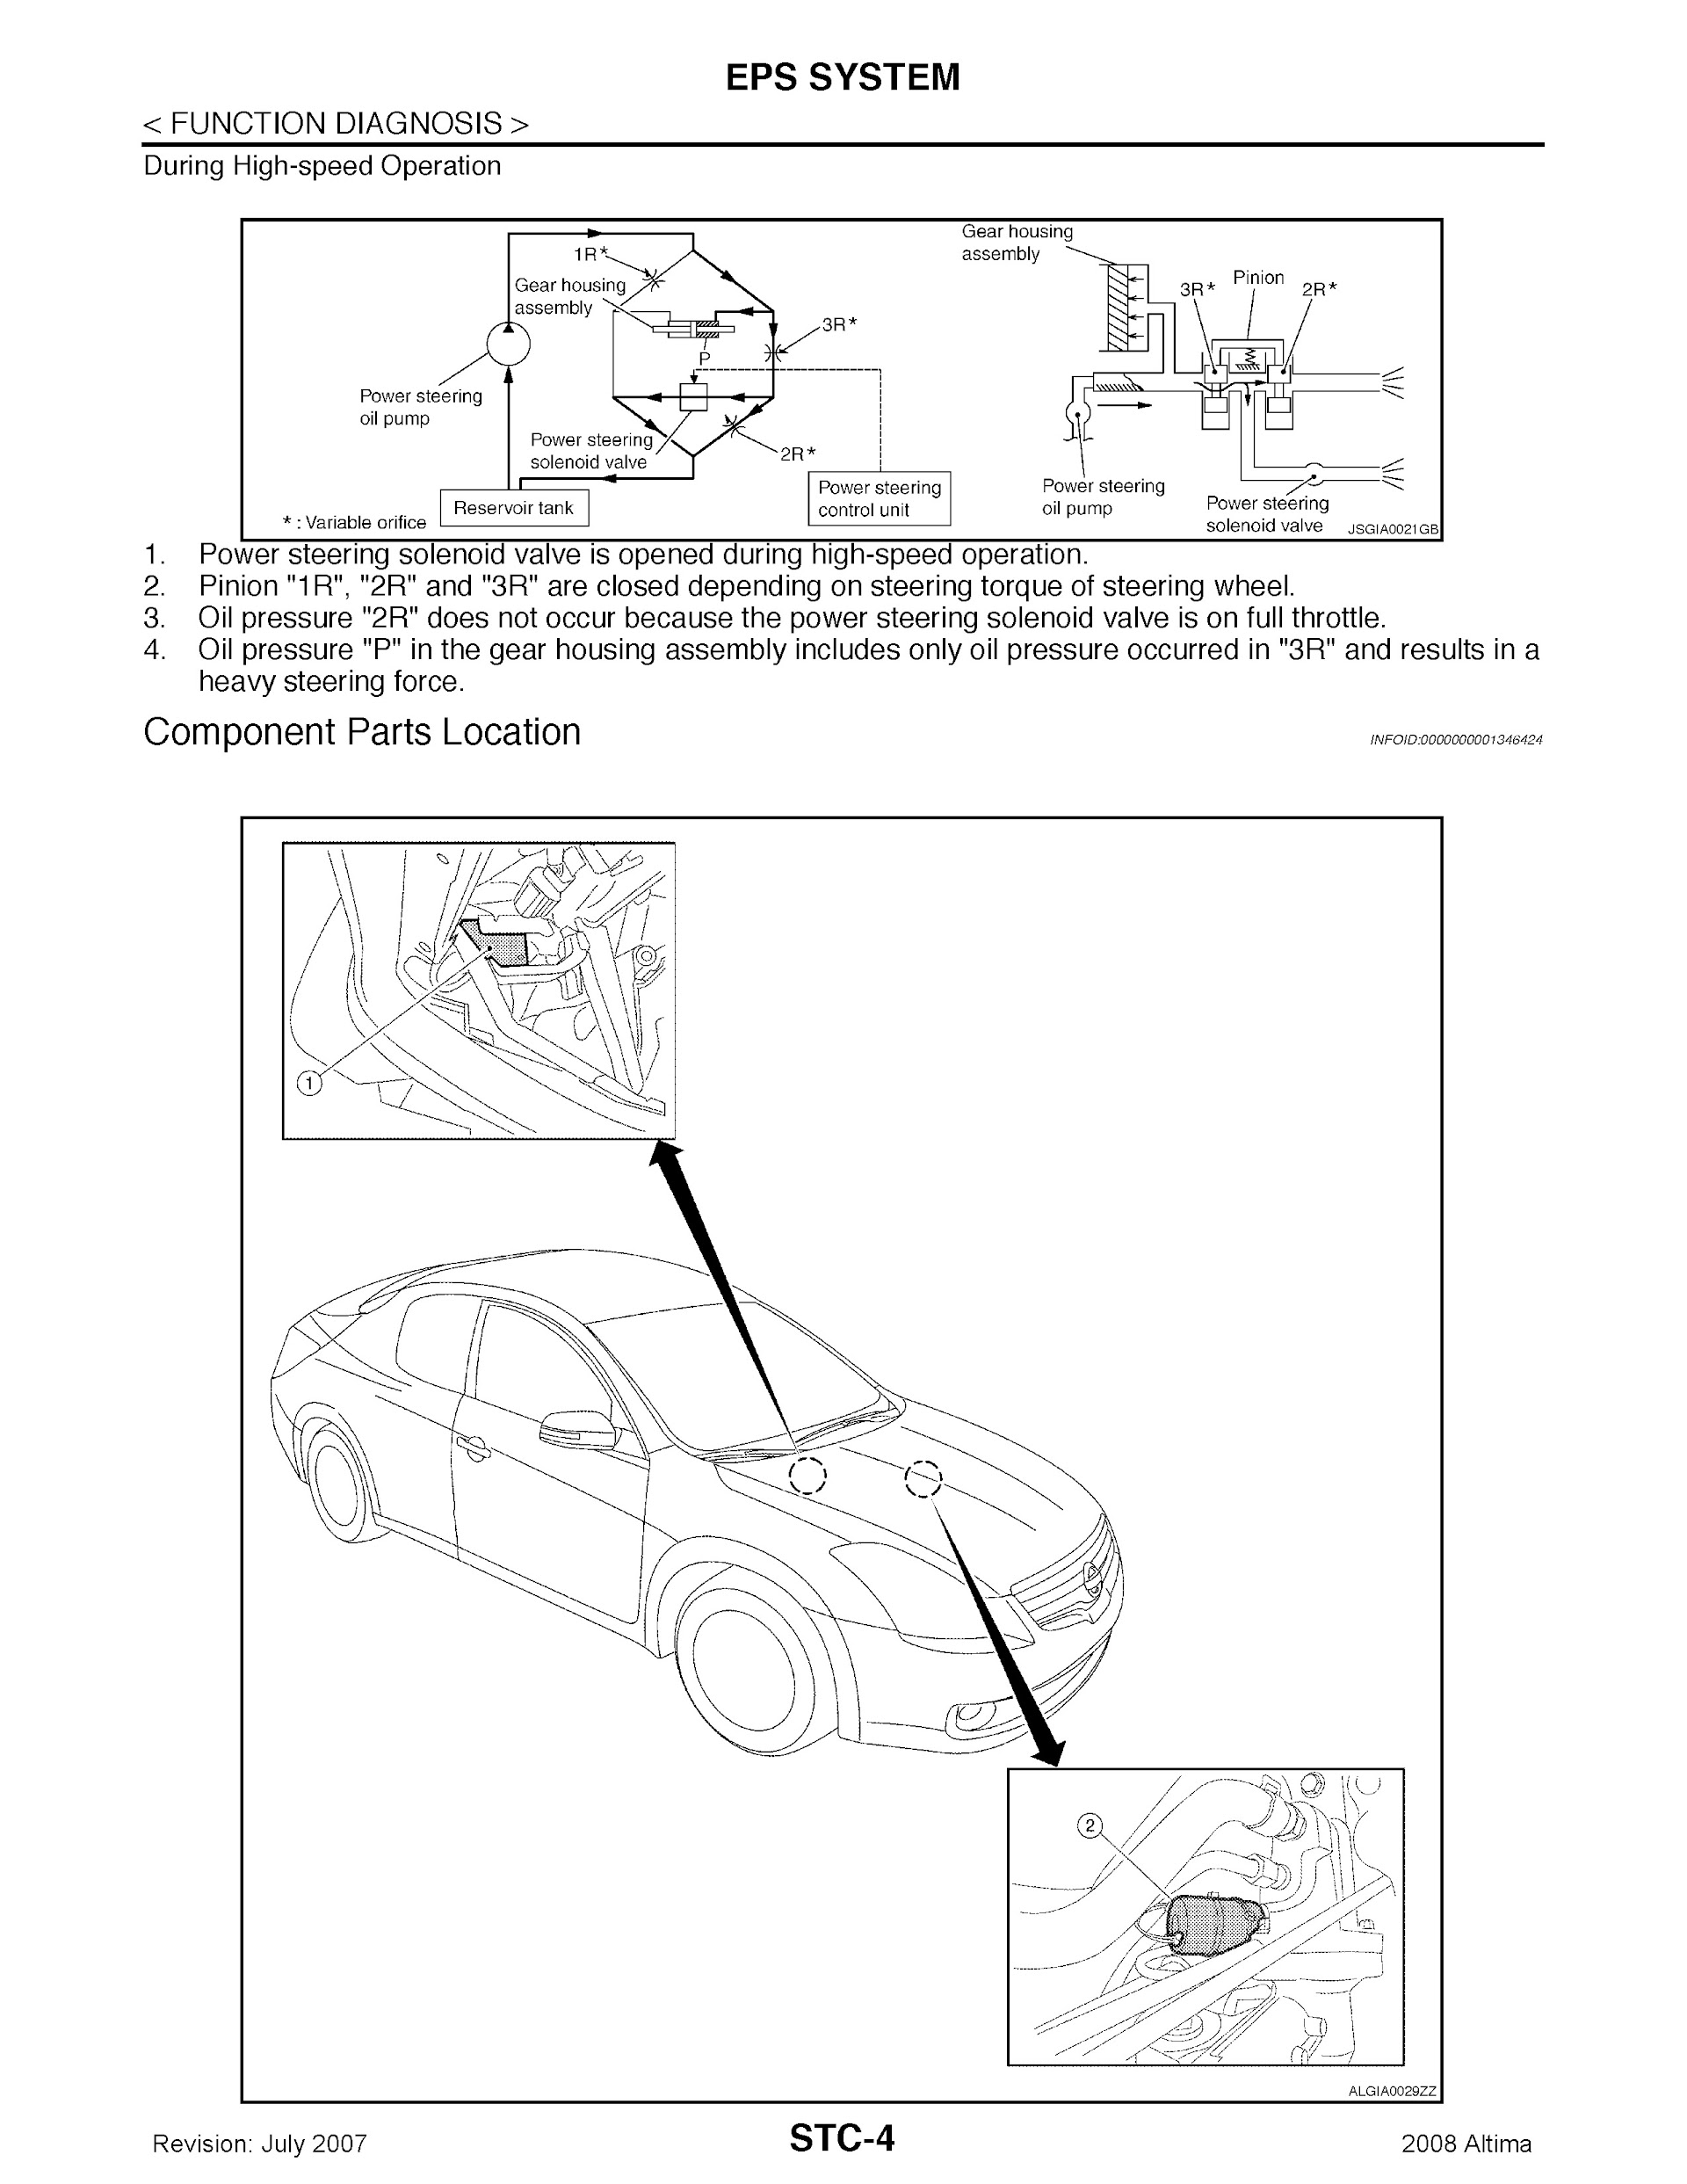 2008 Nissan Altima Repair Manual.